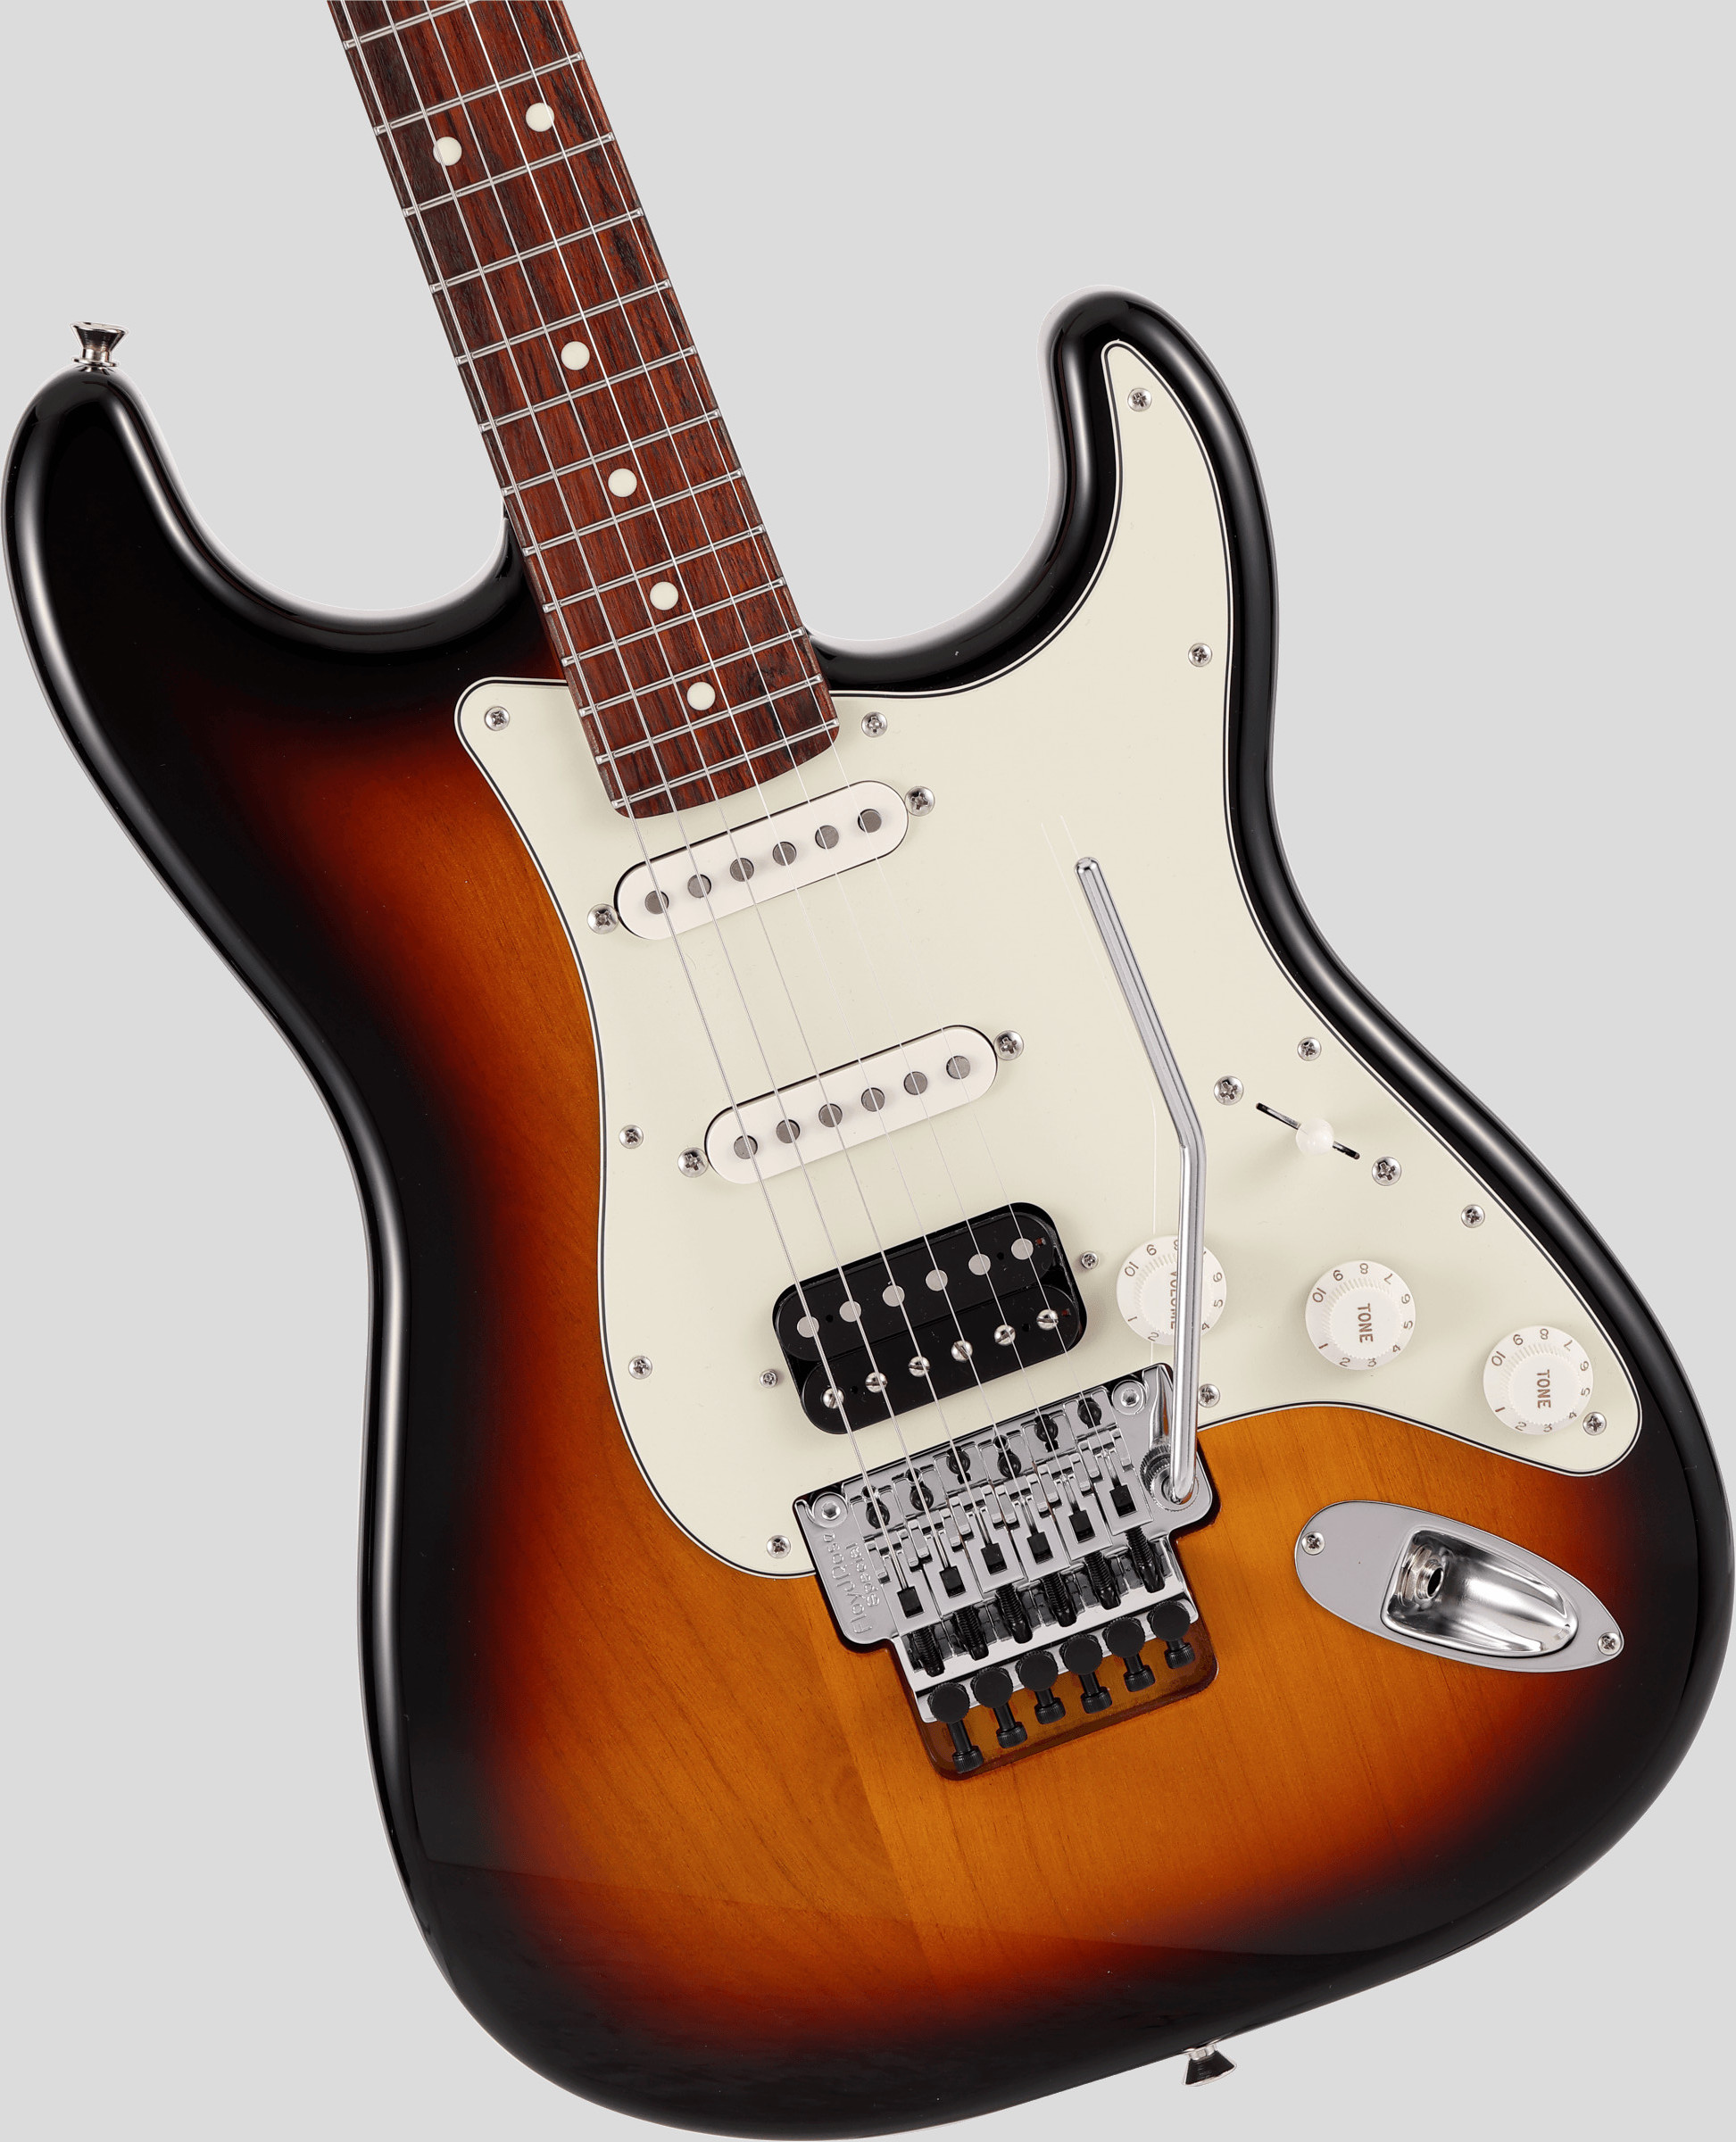 Fender Limited Edition Stratocaster Floyd Rose 3-Color Sunburst 4